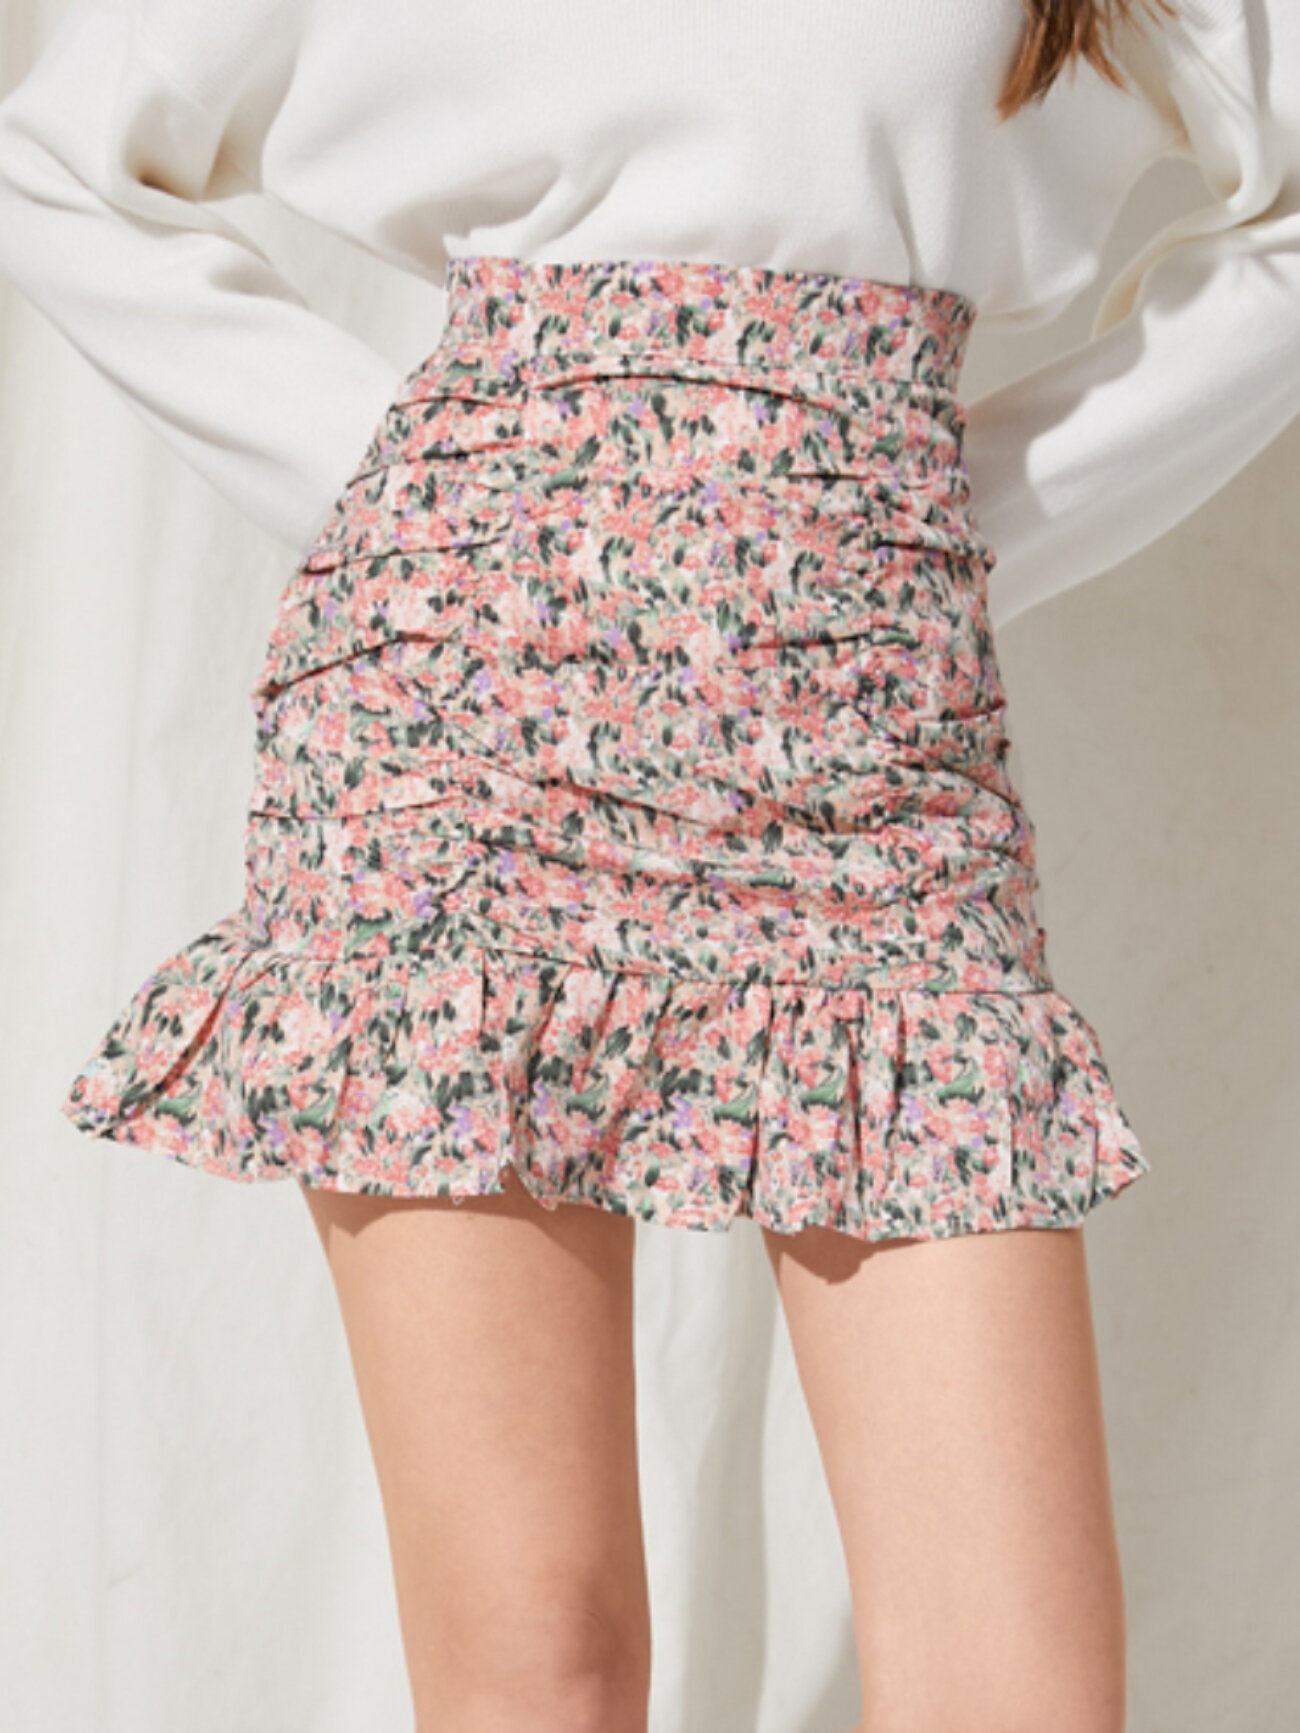 Floral Print Ruffle Folds High Waist Chiffon Skirt